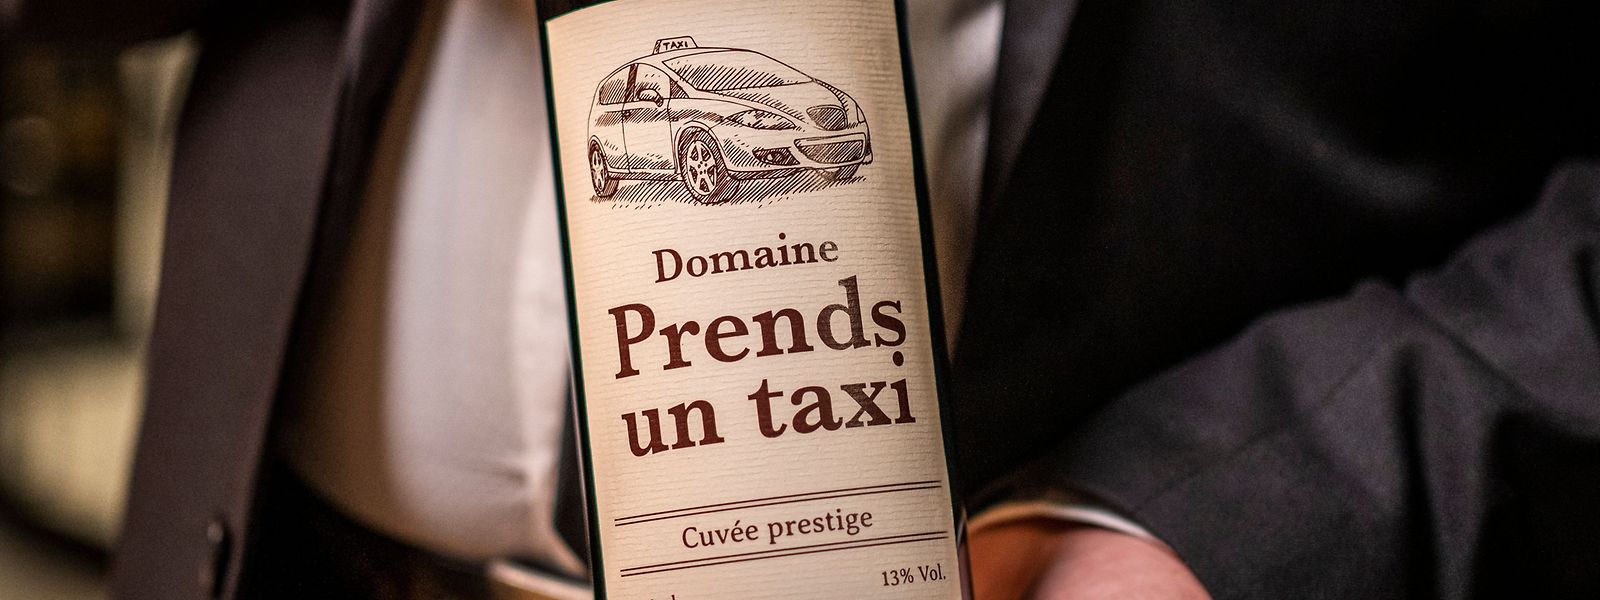 Die Etikette „Domaine Prends un taxi“ auf der Weinflasche soll dazu beitragen, Alternativen aufzuzeigen, wie man nach dem Alkoholkonsum den Weg nach Hause findet.